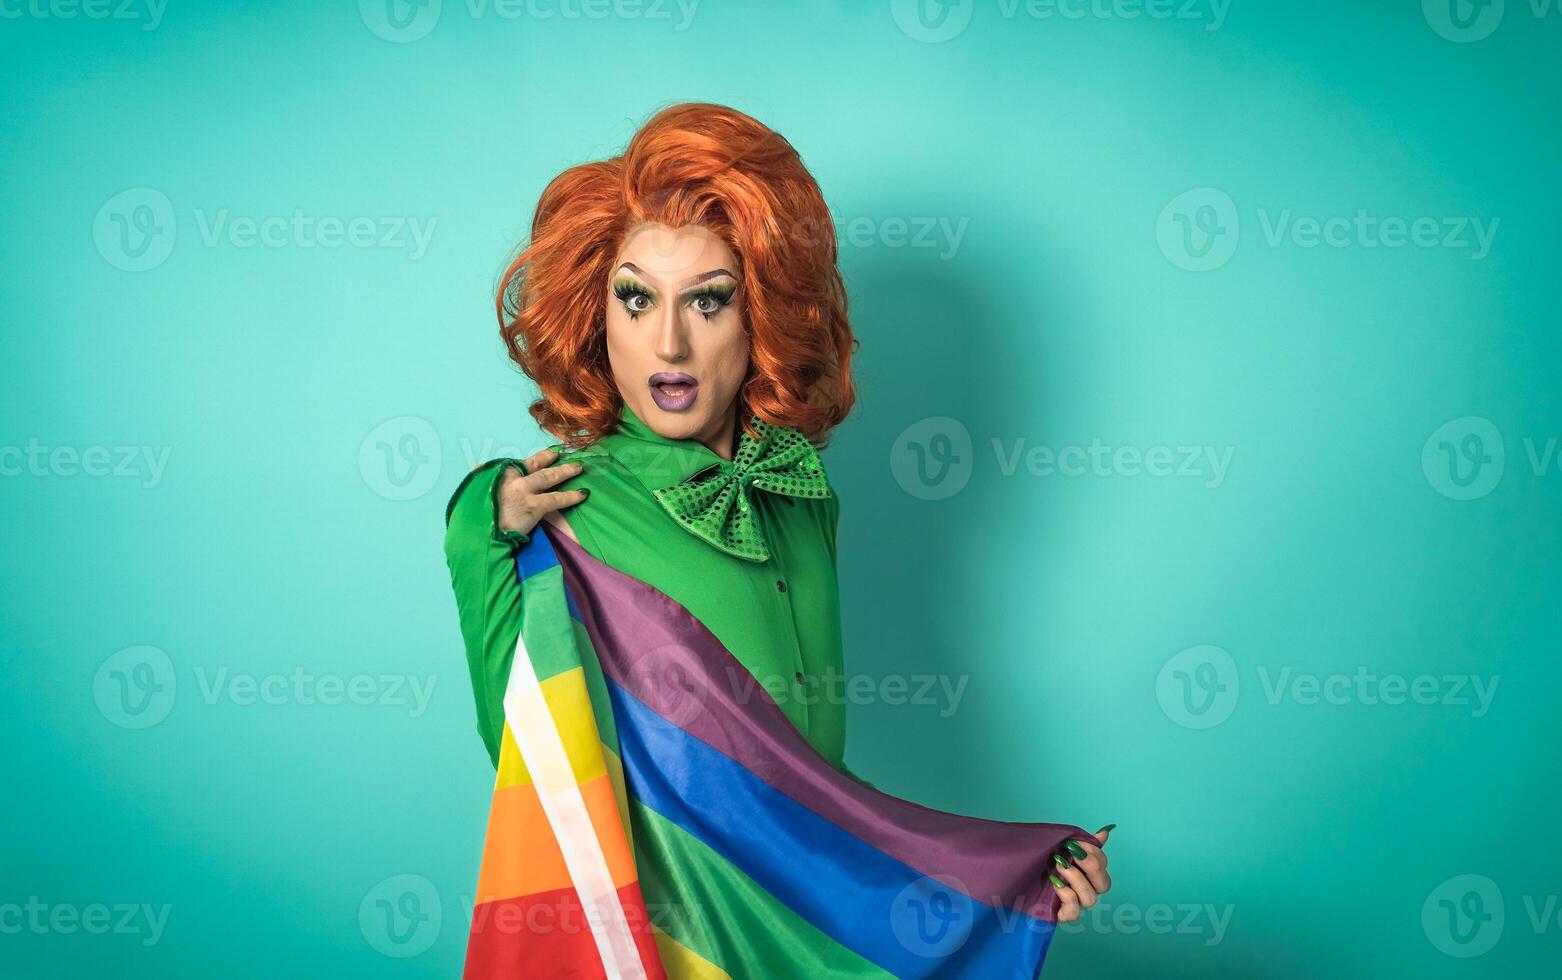 arrasto rainha a comemorar gay orgulho segurando arco Iris bandeira - lgbtq social comunidade conceito foto